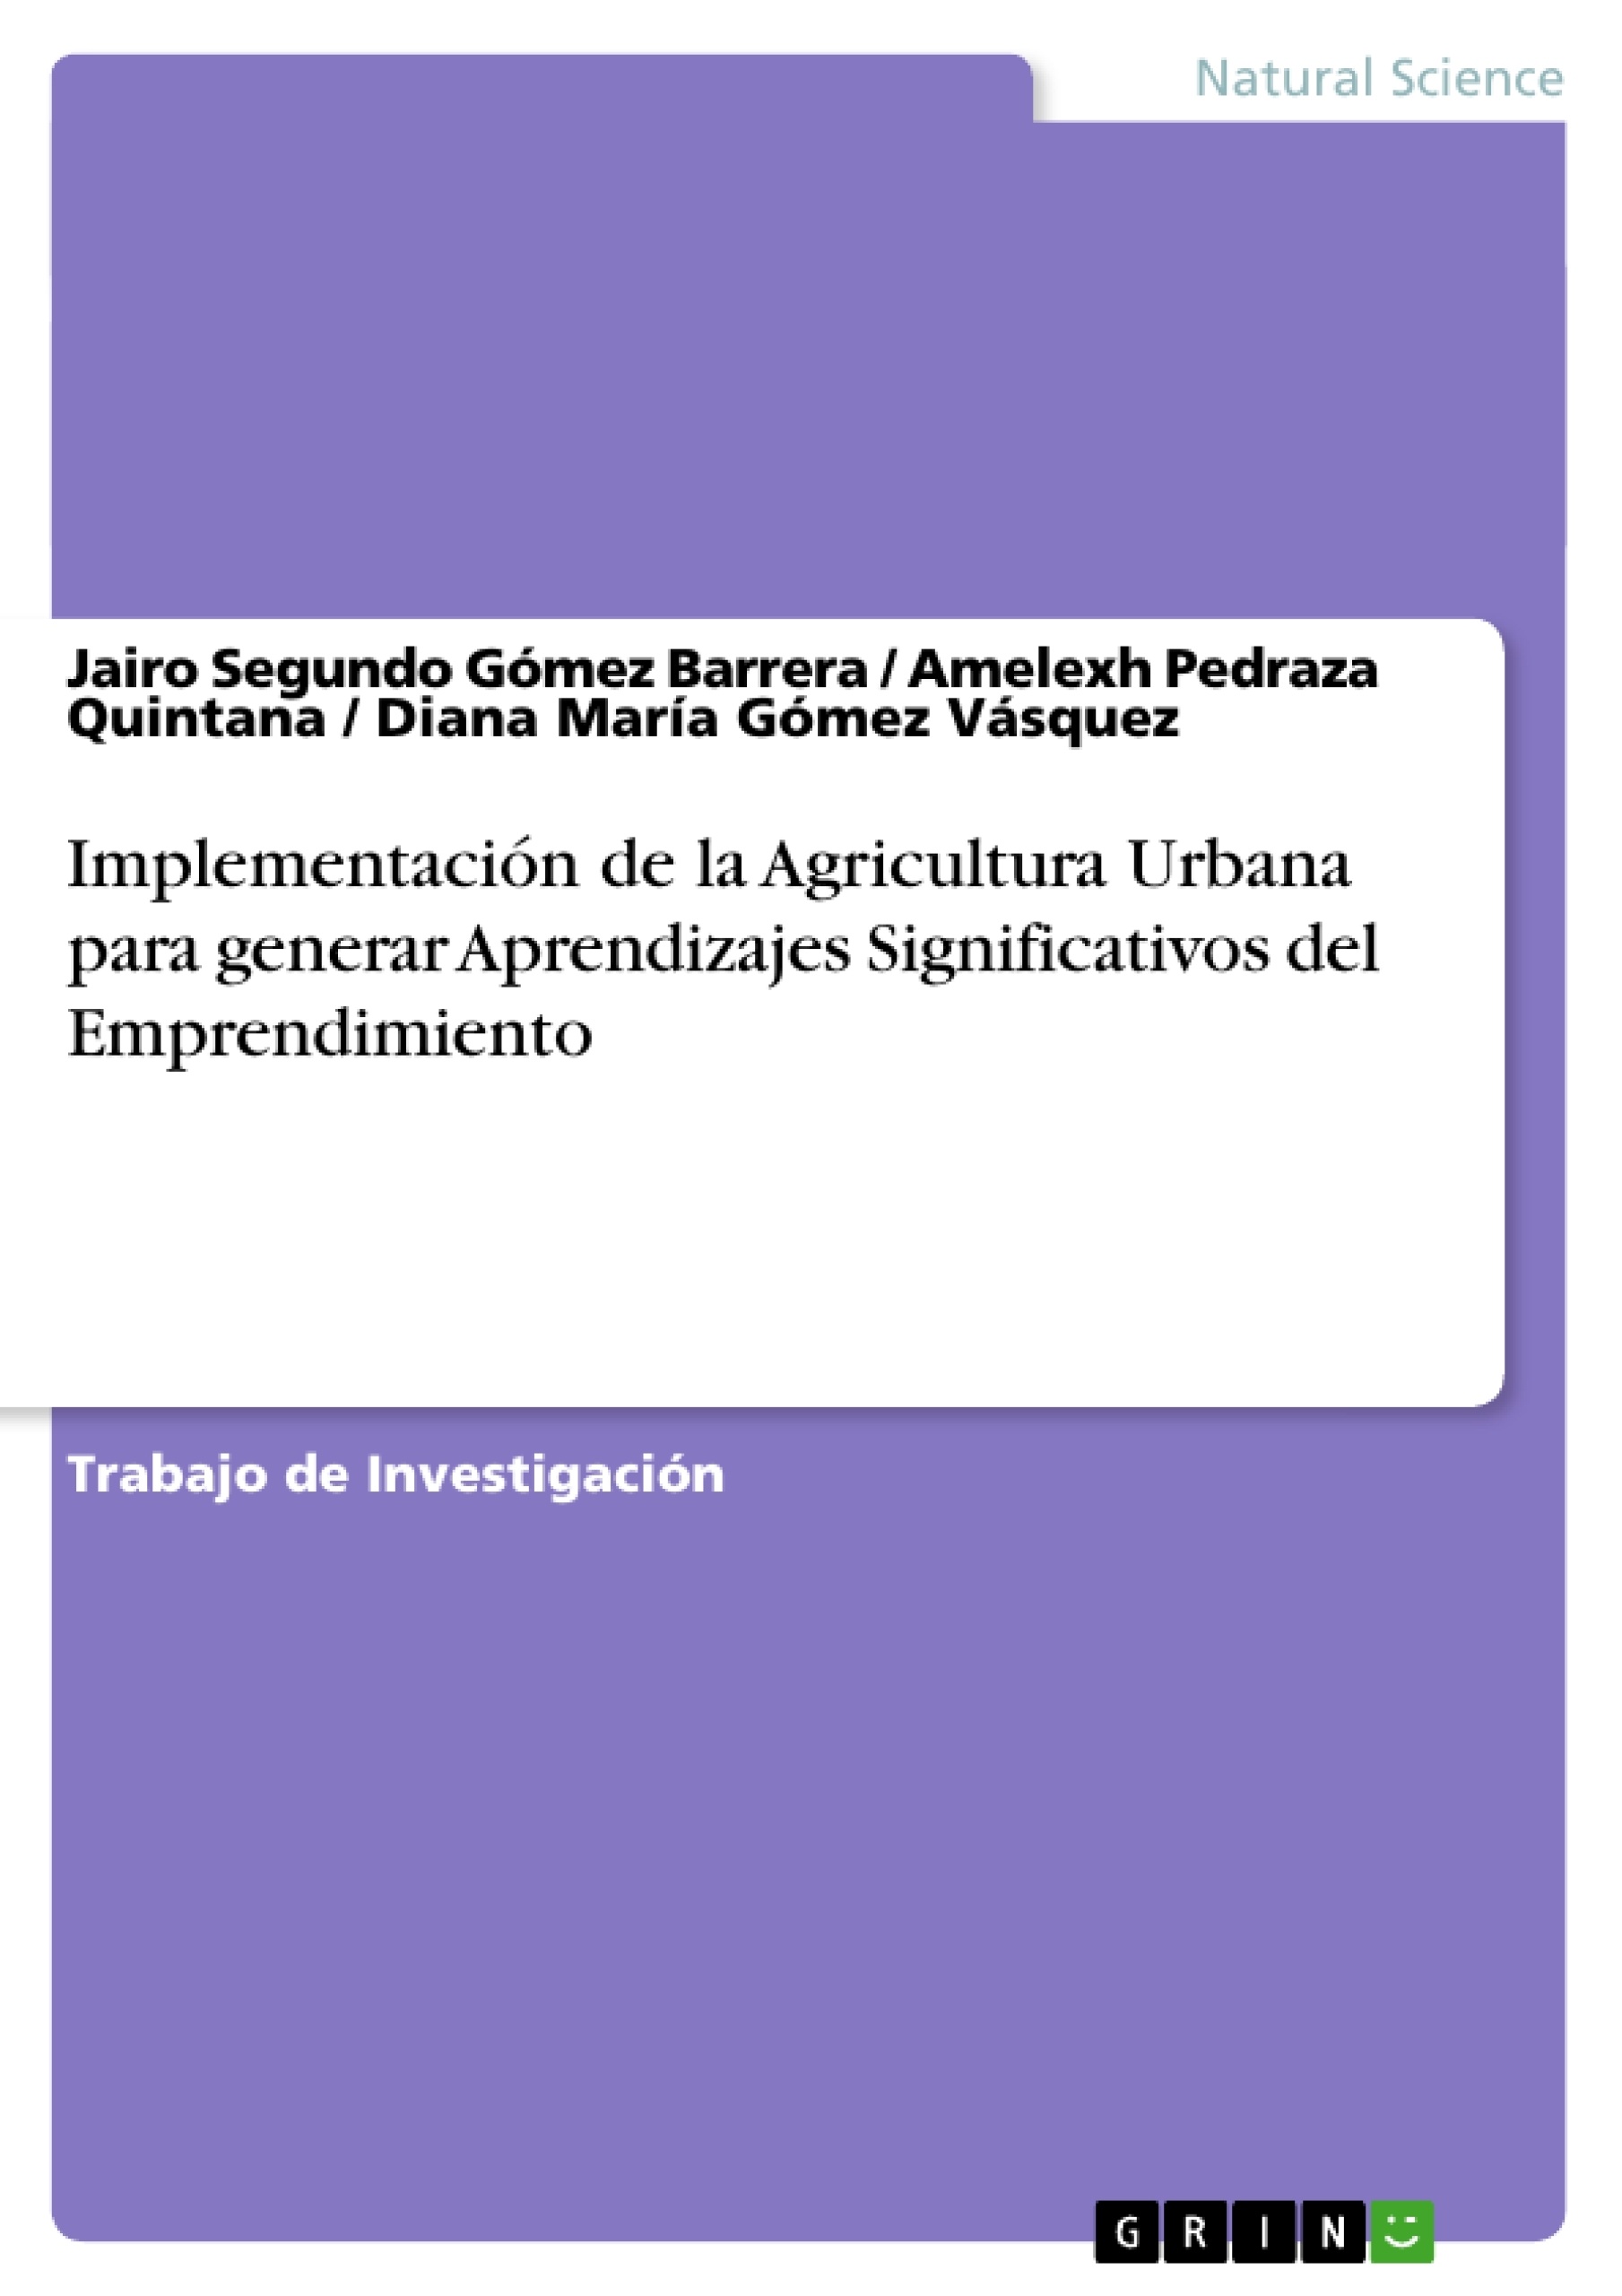 Título: Implementación de la Agricultura Urbana para generar Aprendizajes Significativos del Emprendimiento